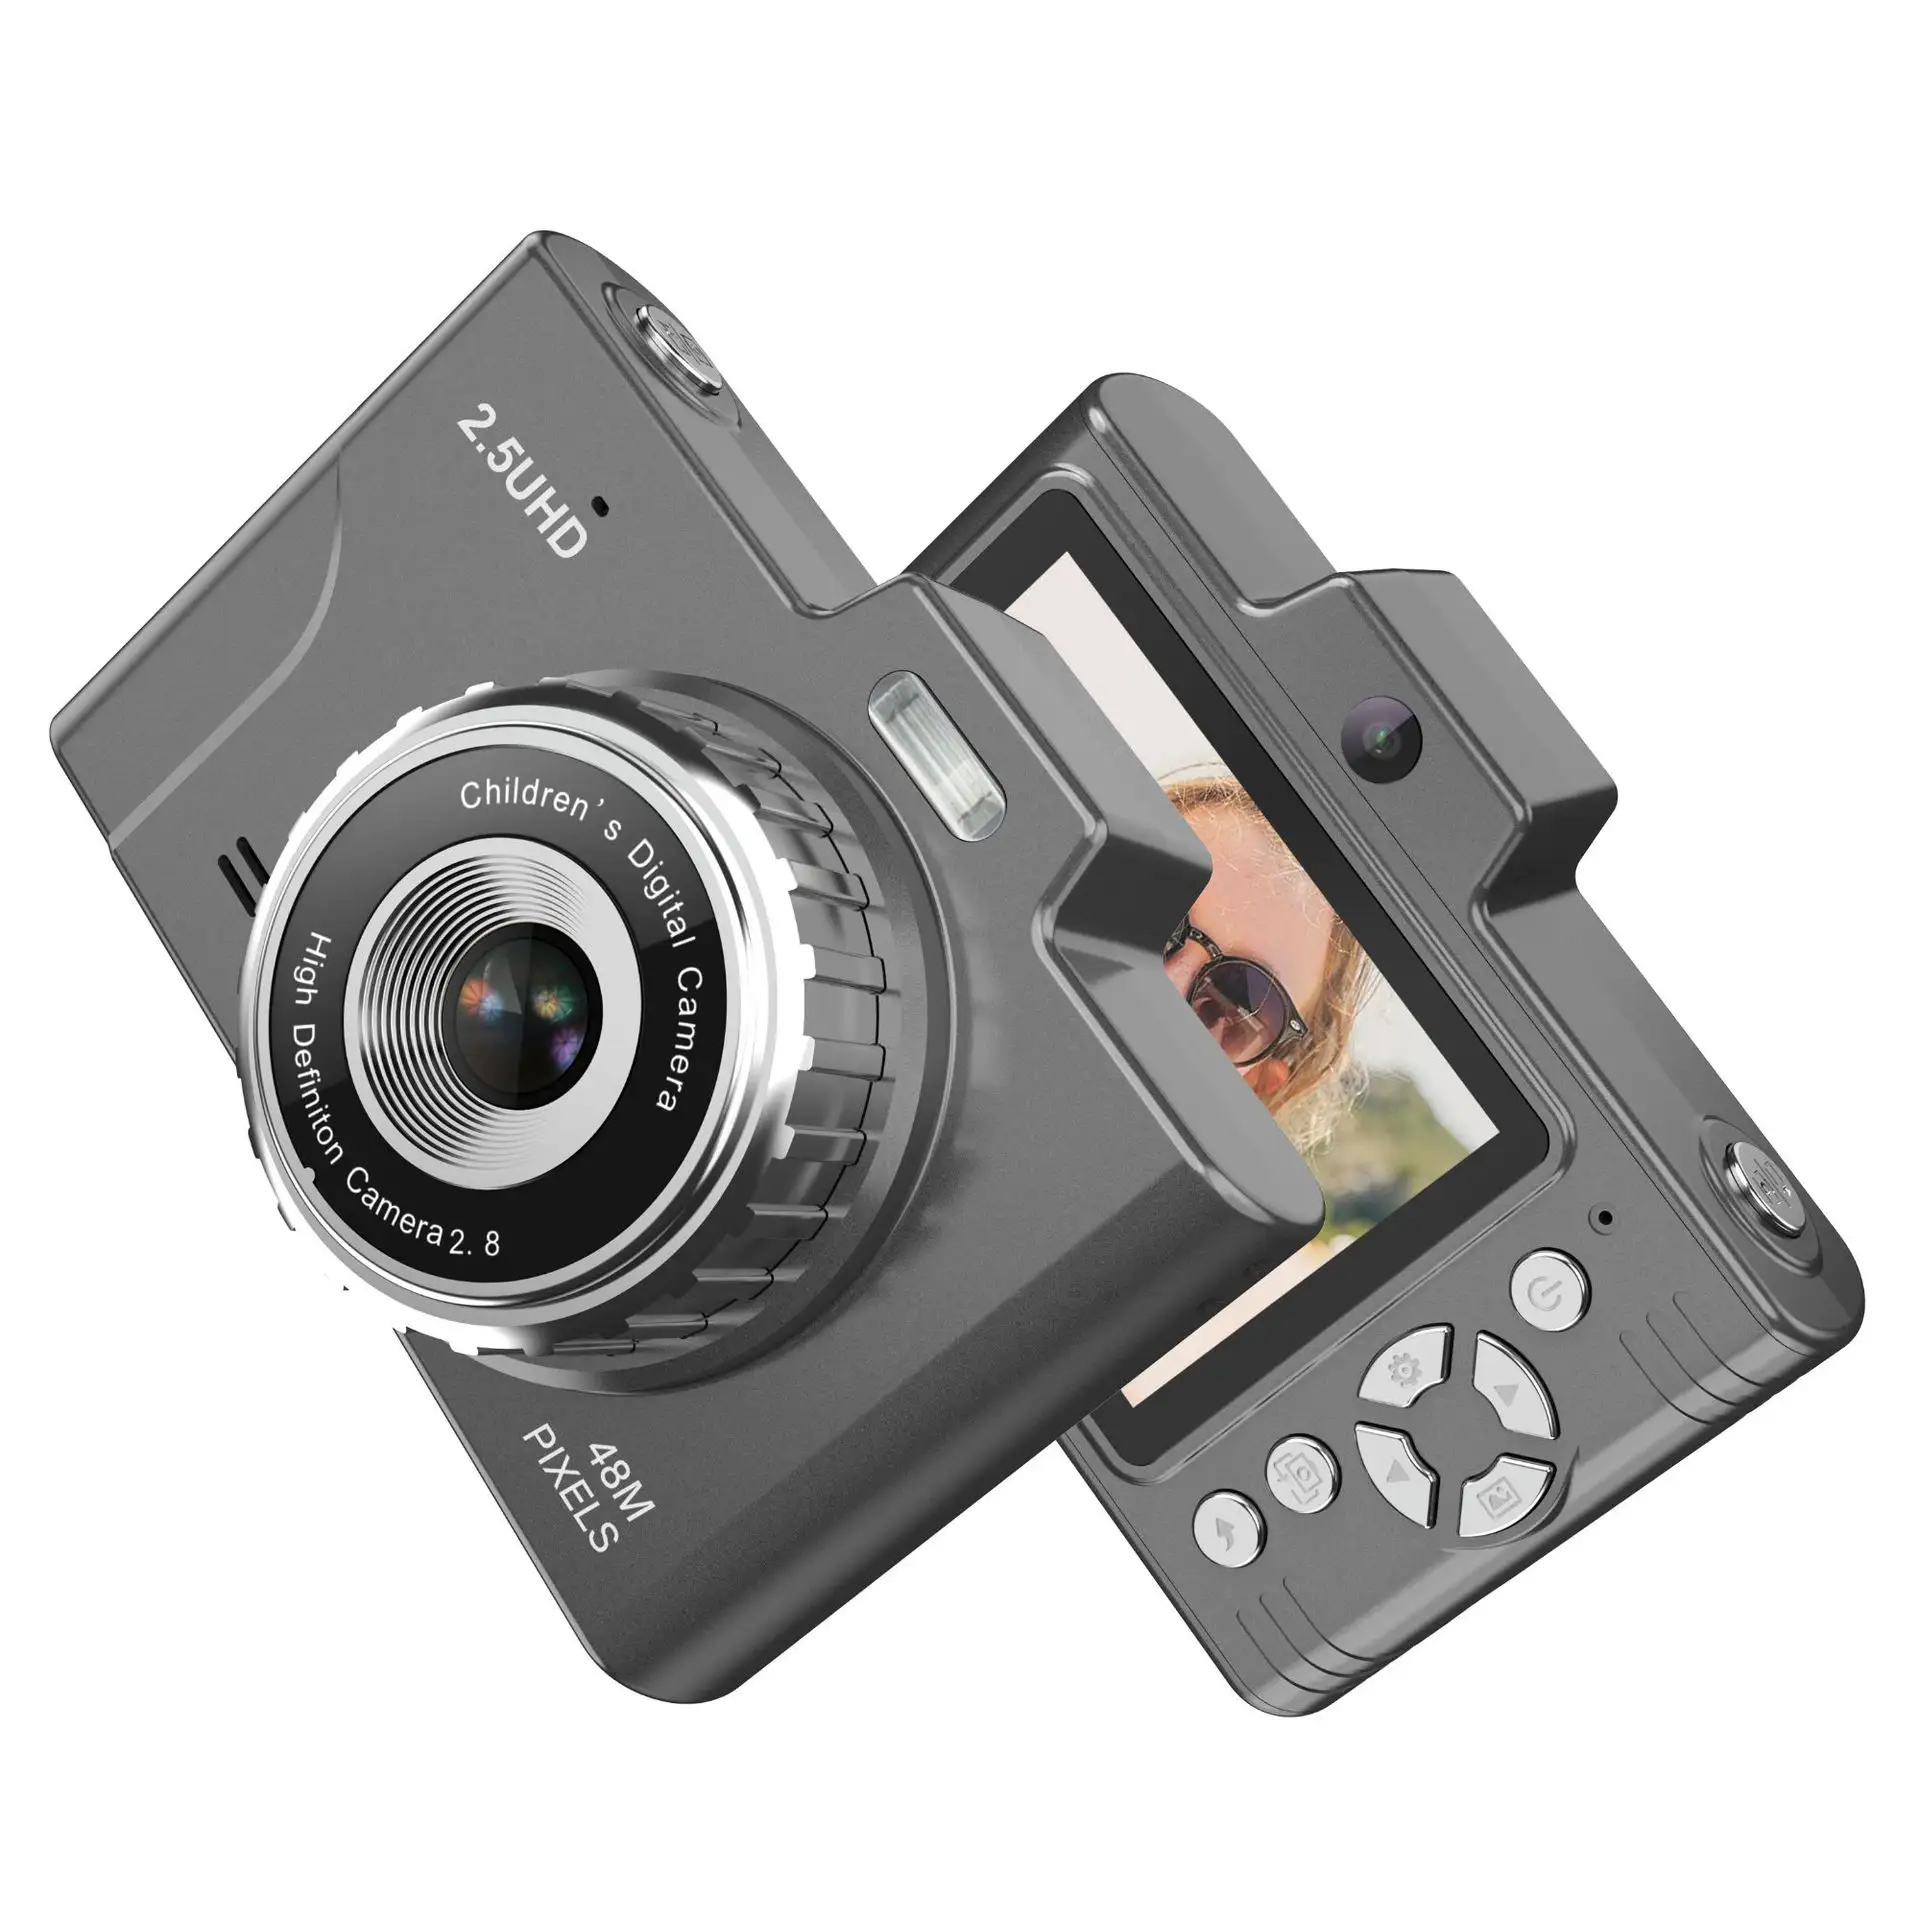 Nuevo estilo 4K cámara de vídeo fotográfica profesional videocámara Dslr lente AF frontal 48MP 18x Zoom Digital fotografía cámaras digitales